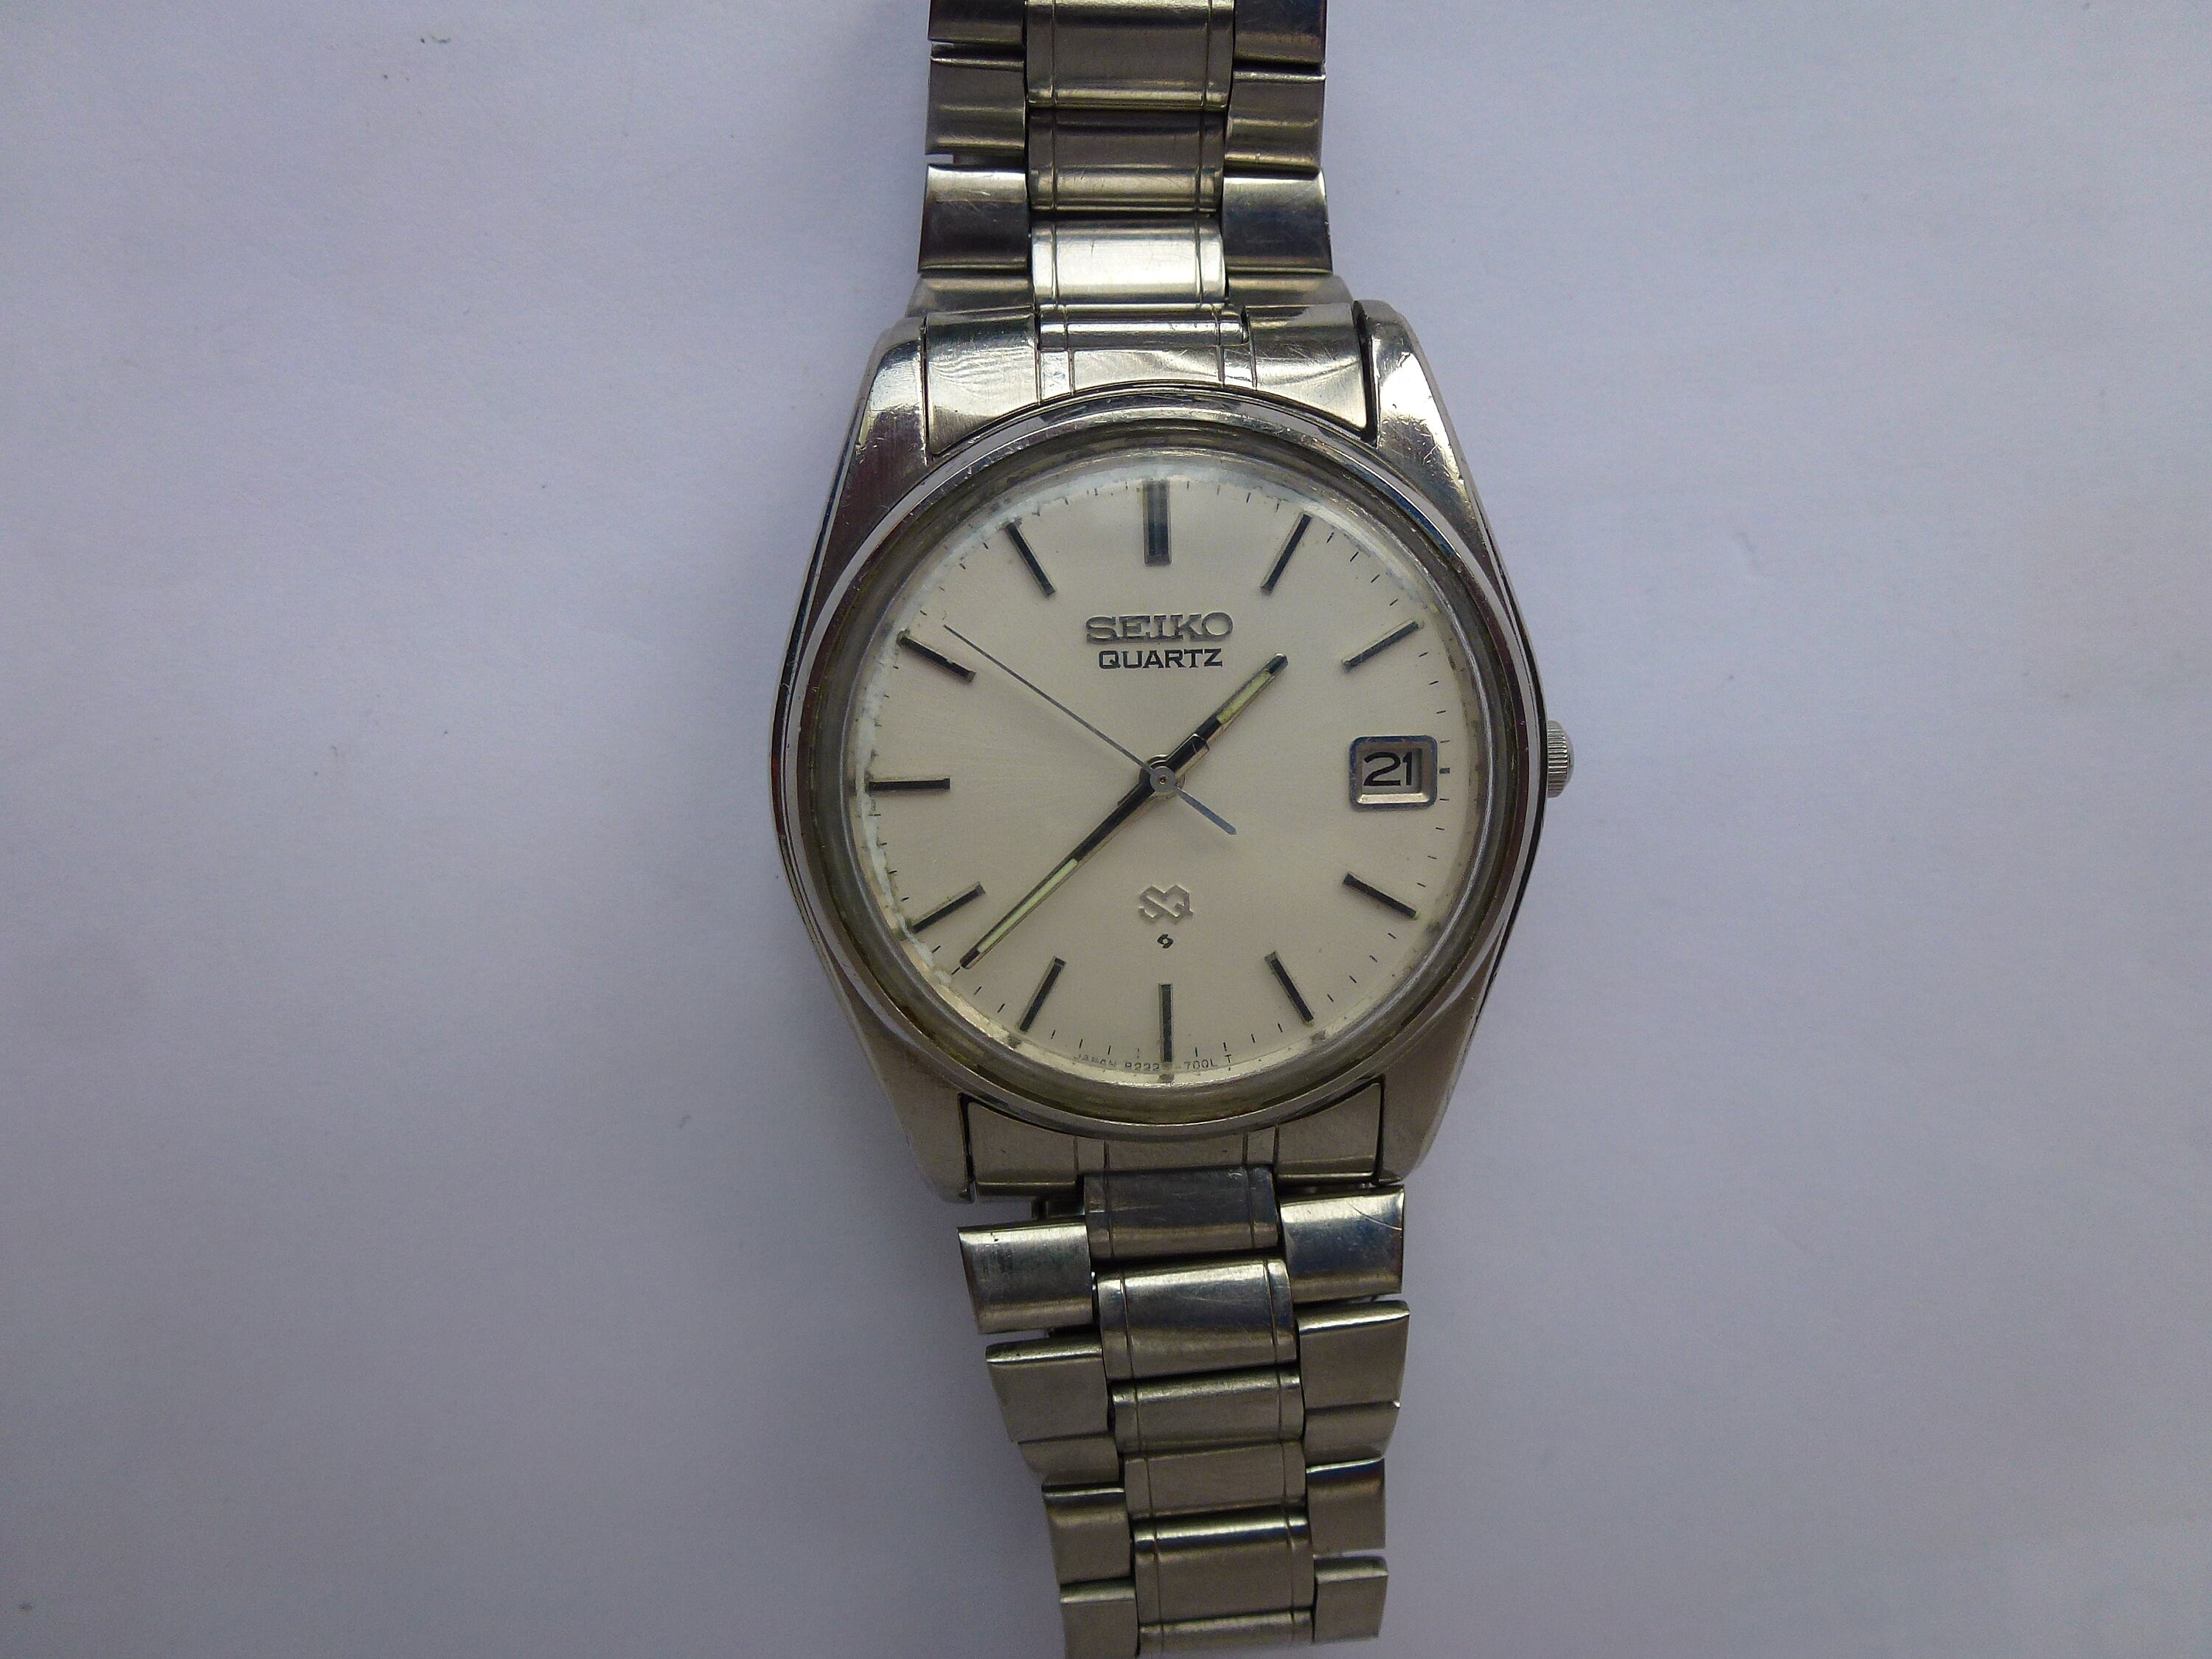 Seiko Quartz 8222-7070 Vintage Stainless Steel Watch - Etsy